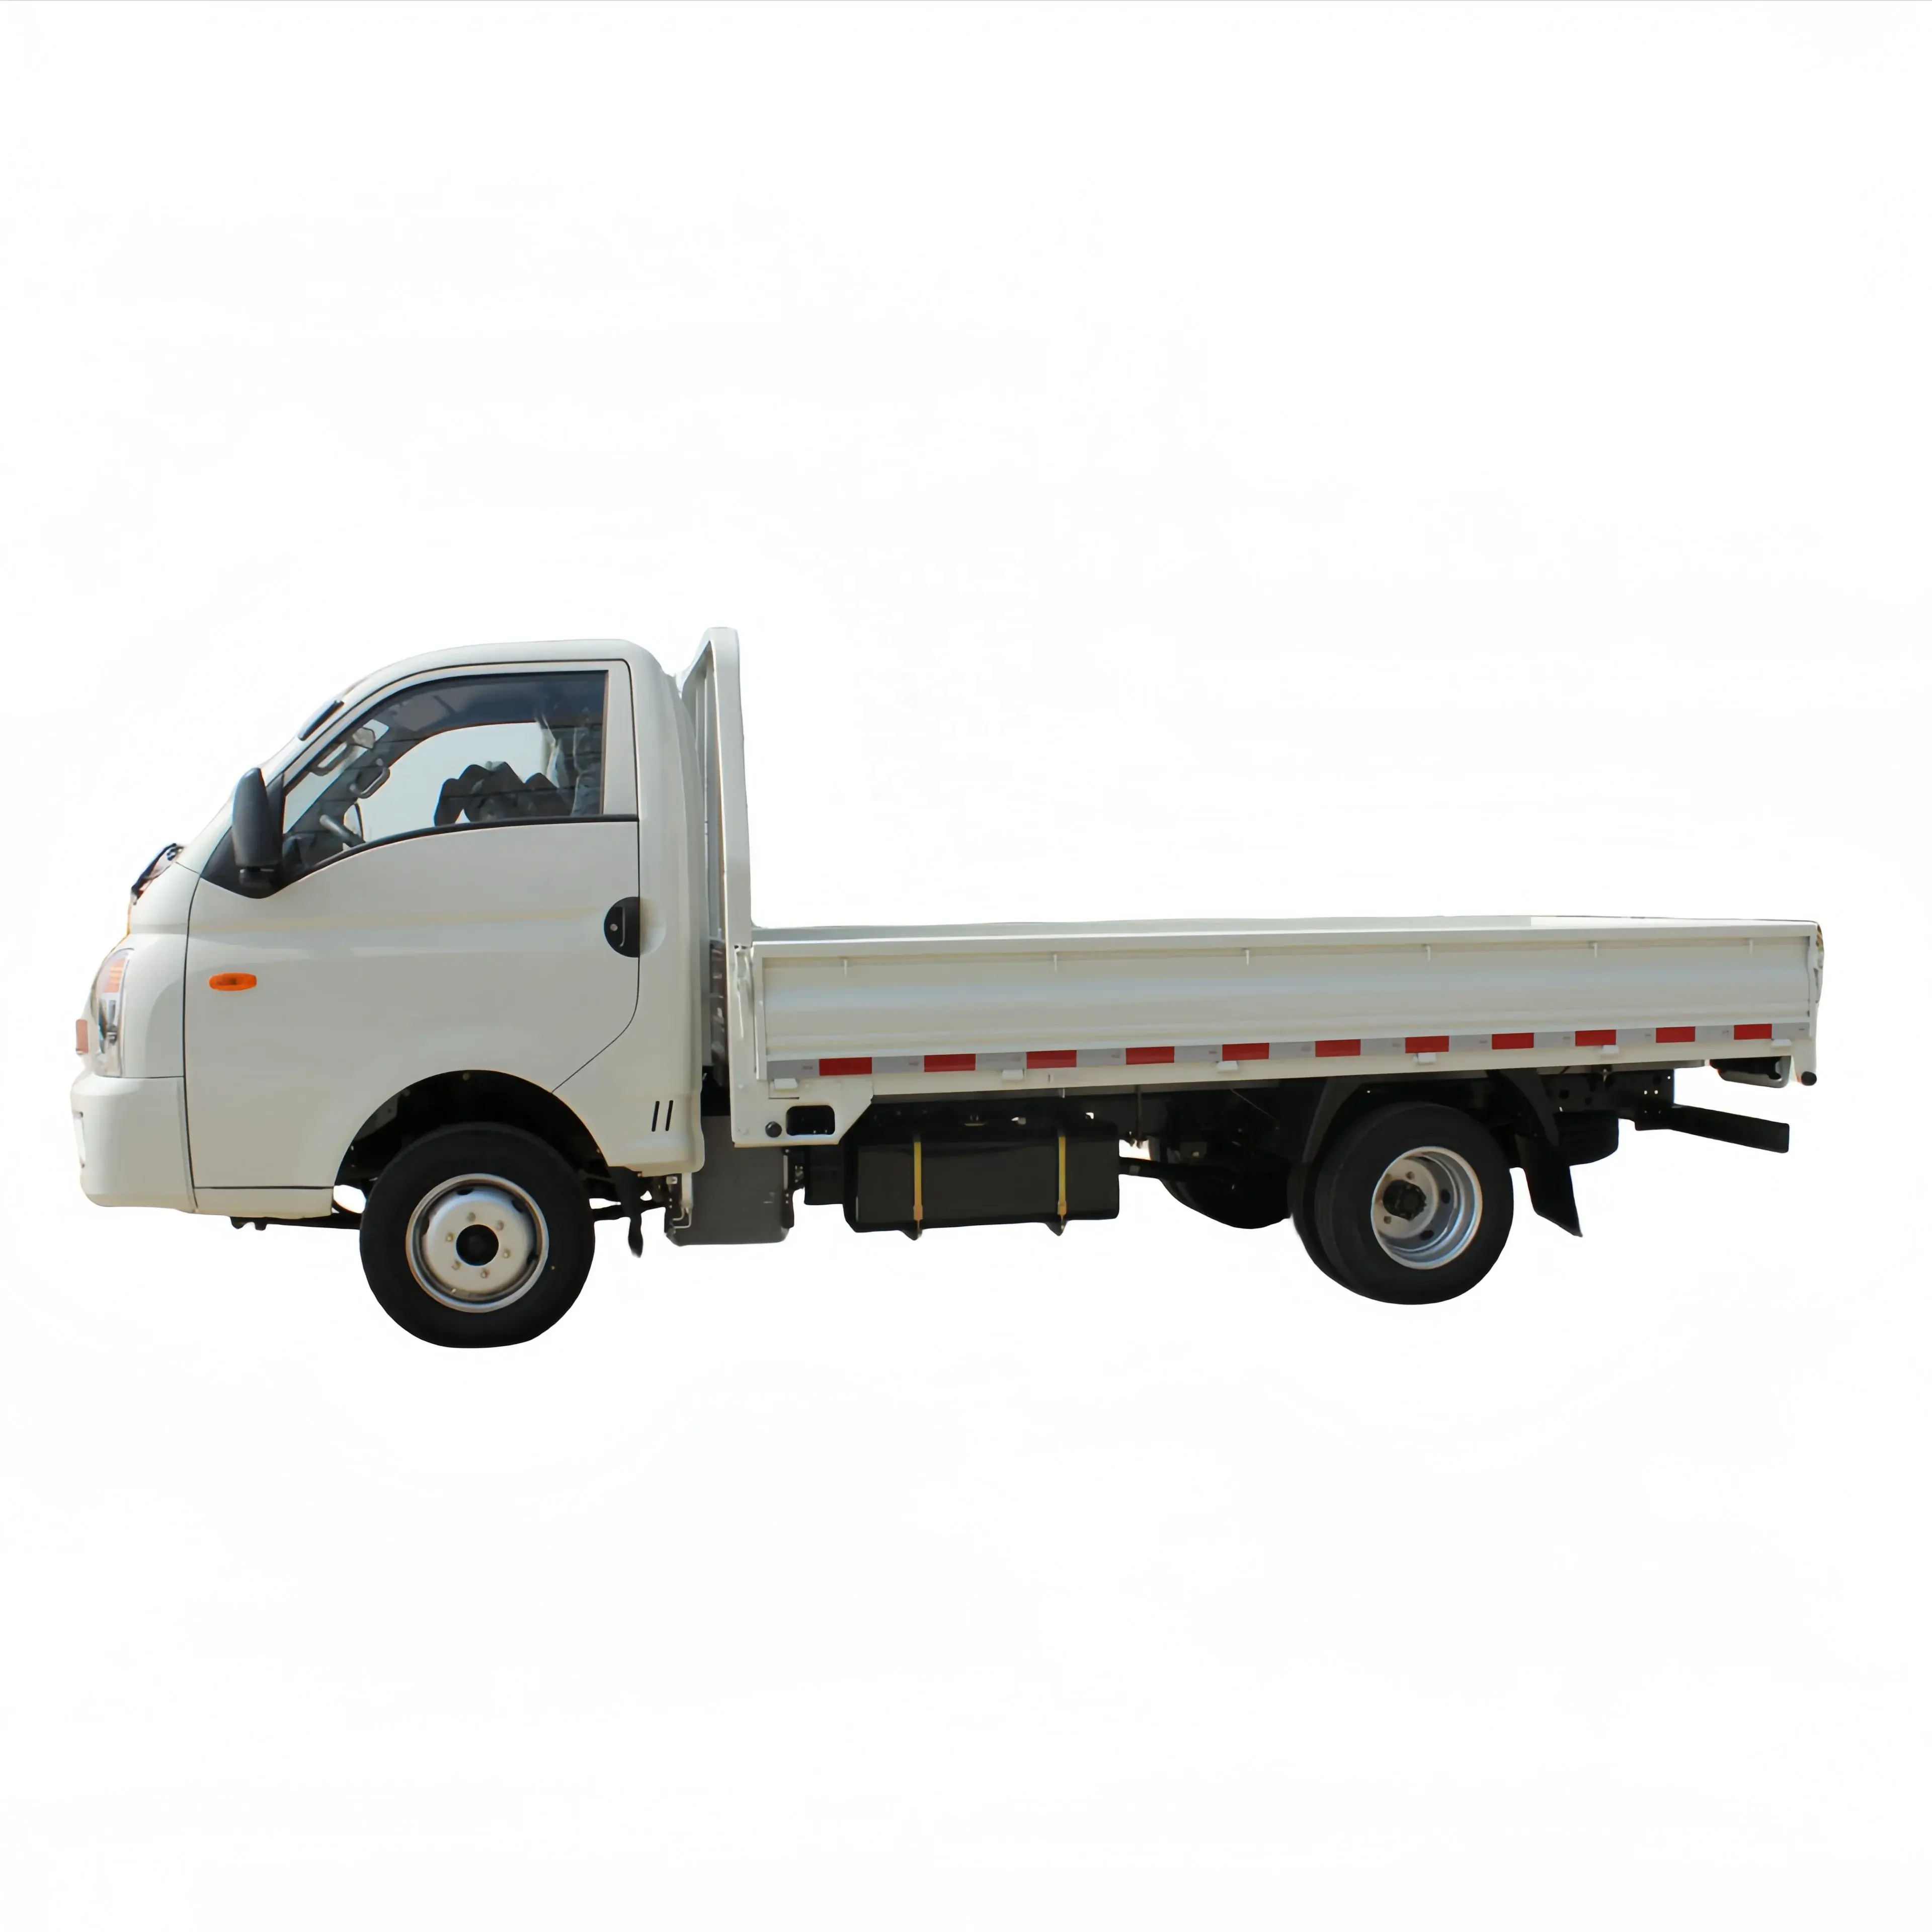 KAMA saf elektrikli mini kamyon hafif kargo kamyon ile büyük uzay ve uzun dayanıklılık kutusu mini kamyon elektrikli suv araba